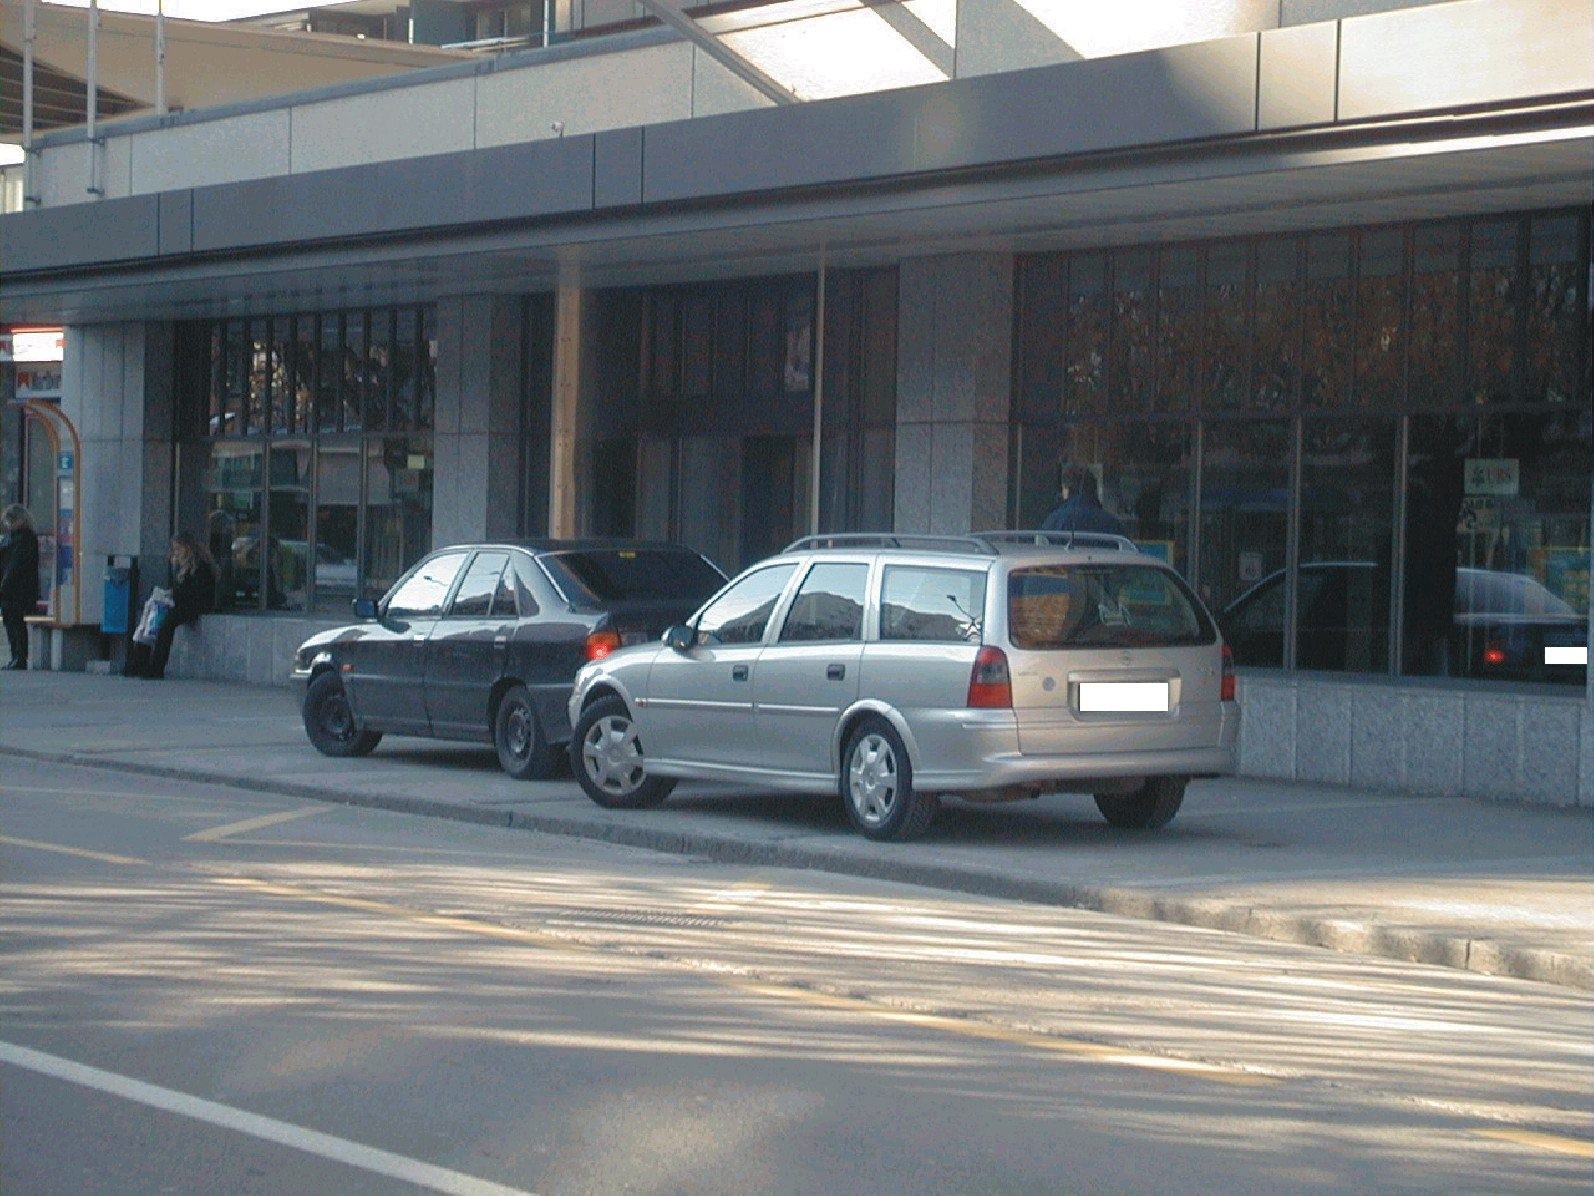 La police, lasse de l'irrespect des automobilistes,  va sevir contre le parcage intempestif sur les trottoirs, les arrets de bus. 

Ici sur l'avenue Leopold-Robert a La Chaux-de-Fonds.





photo sp, novembre 2001   STATIONNEMENT